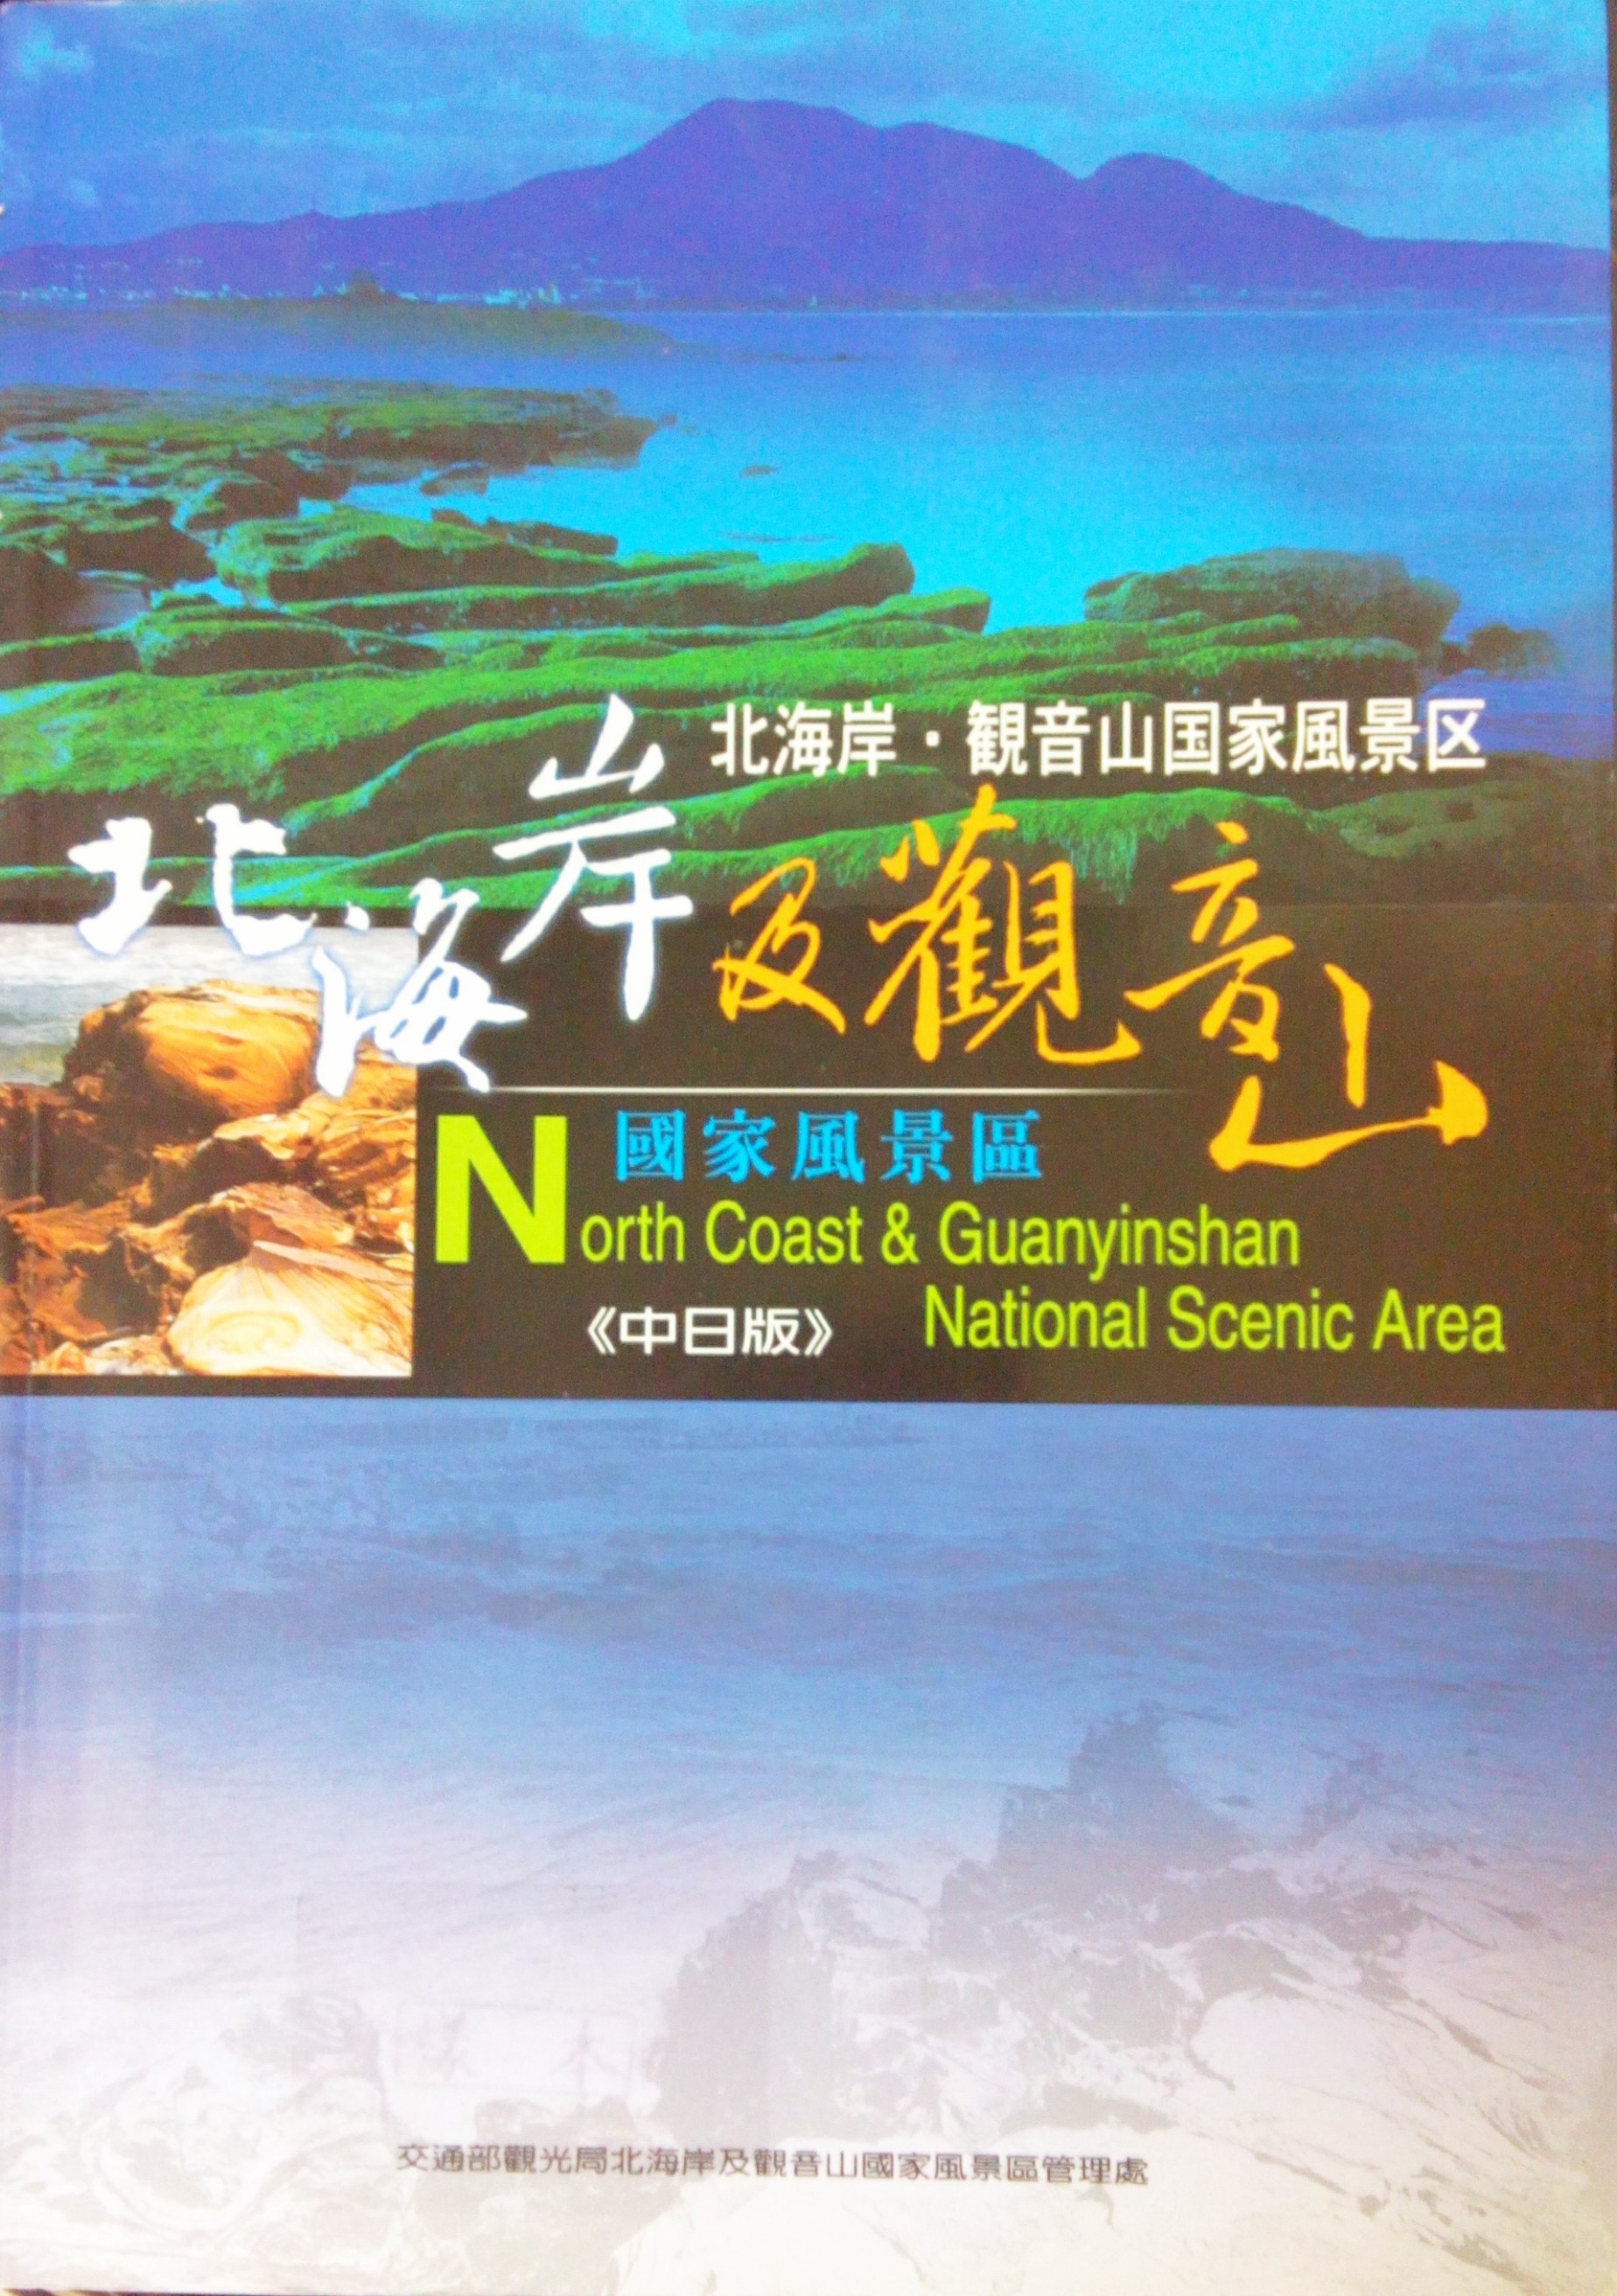 北海岸及觀音山國家風景區＝North Coast & Guanyinshan National Scenic Area